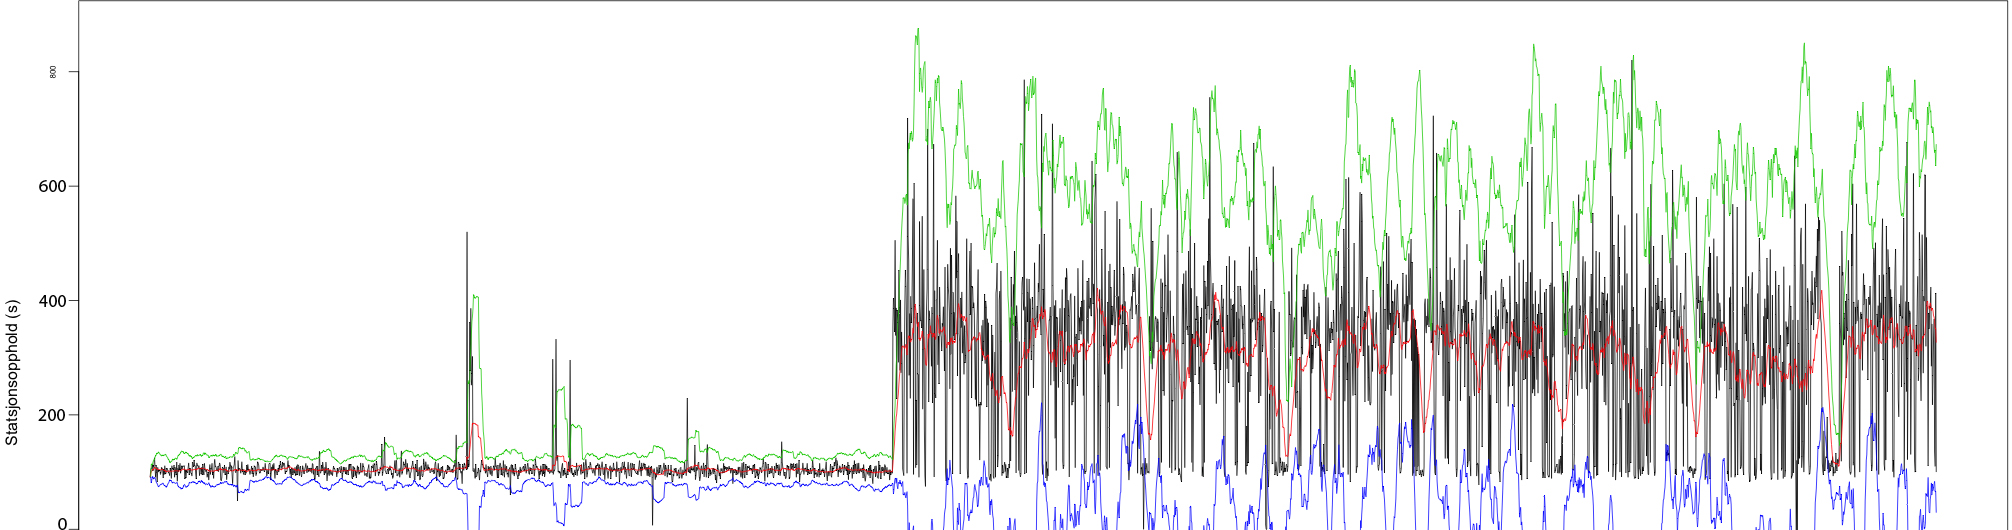 Illustrasjonen viser tidsbruk på en stasjon (y-aksen) for sekvensielle tog (bortover x-aksen). Hvert punkt på den sorte grafen er et tog. "Hoppet" i tidsbruket skyldes midlertidig stenging av et spor på en dobbeltsporet strekning i forbindelse med fornying av en stasjon. 